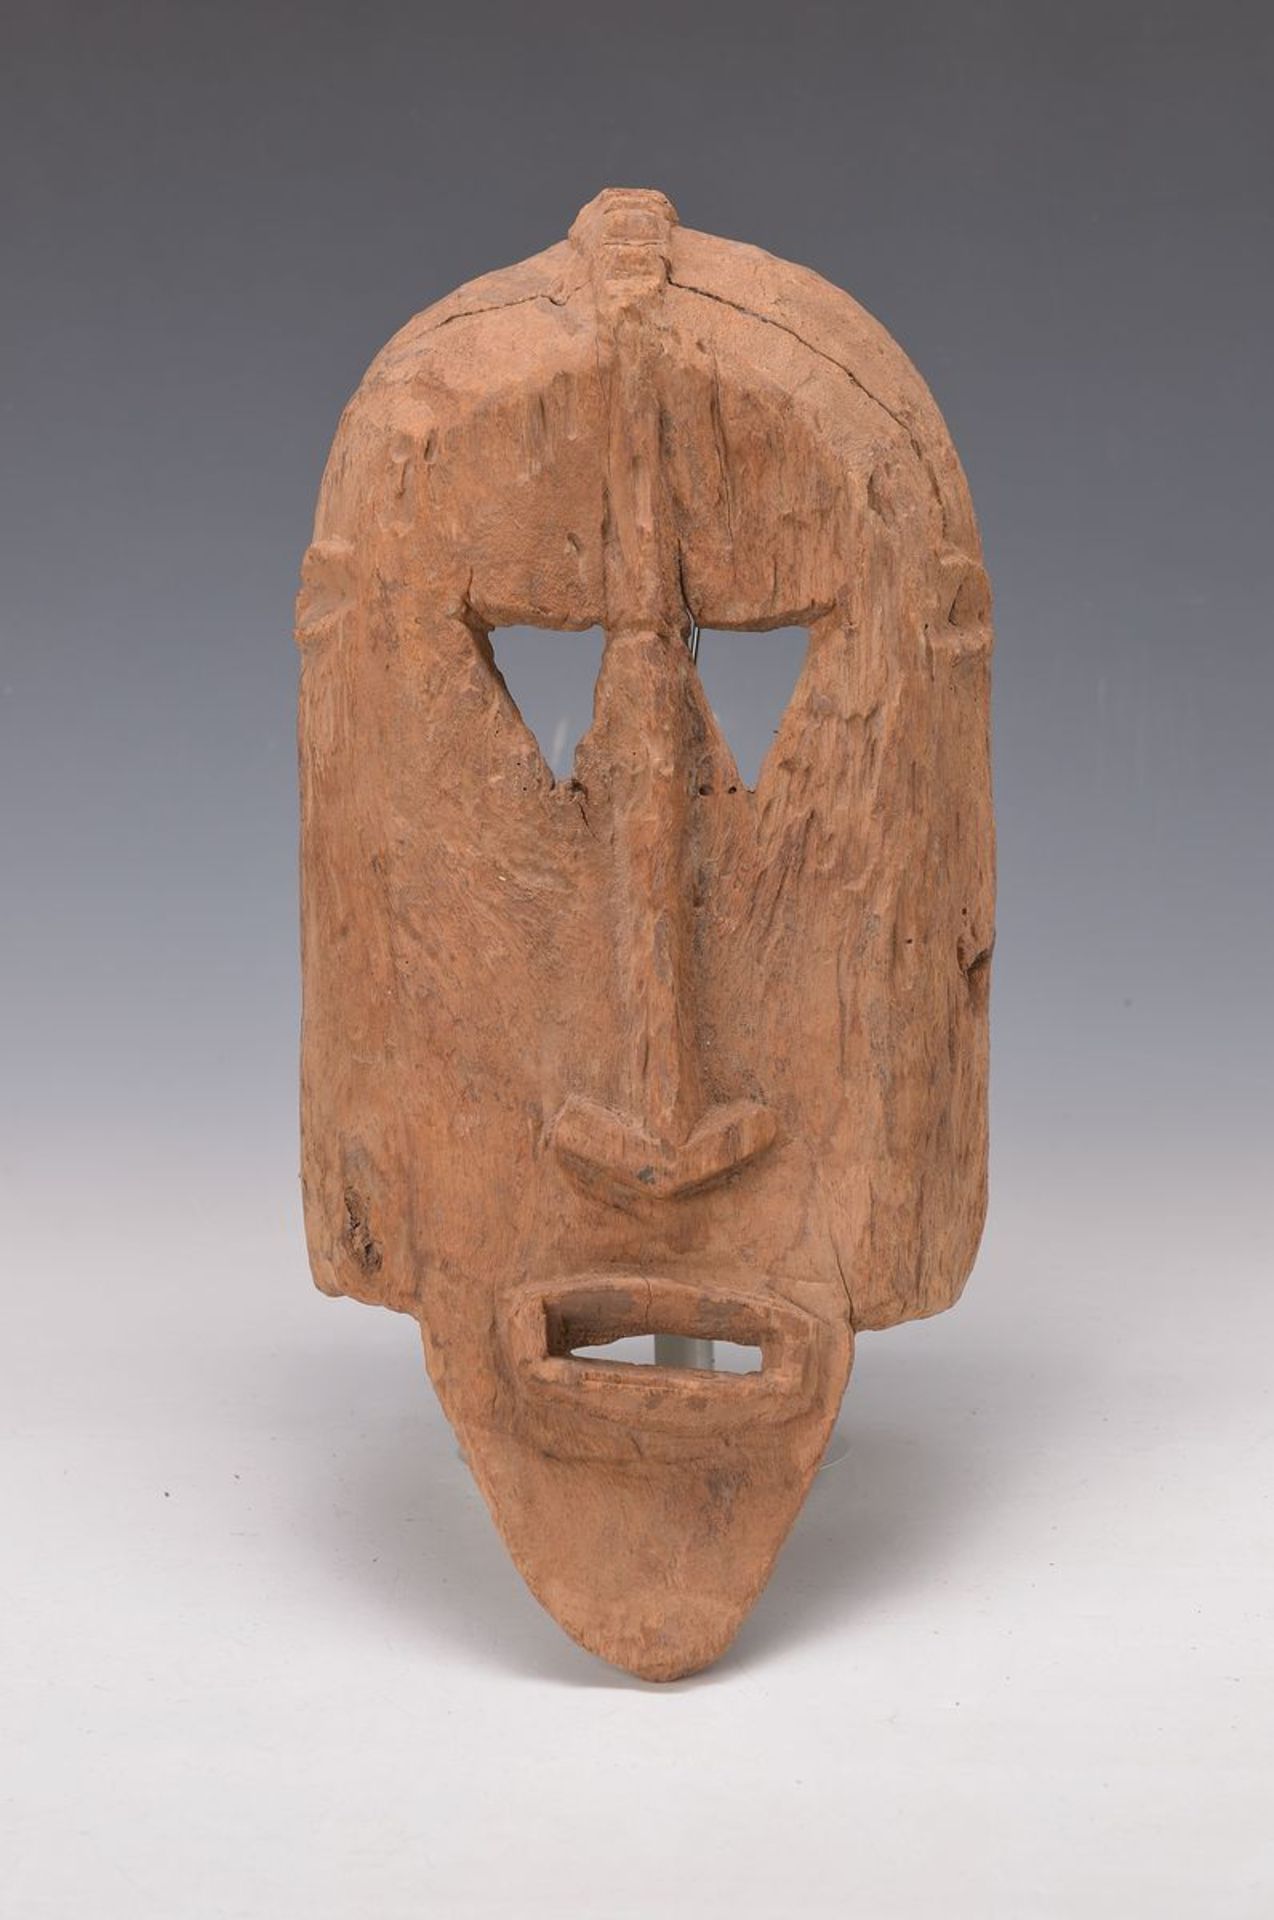 Maske der Dogon, Mali, ca. 80-90 Jahre alt, Holz geschnitzt, rest., archaischer Ausdruck,